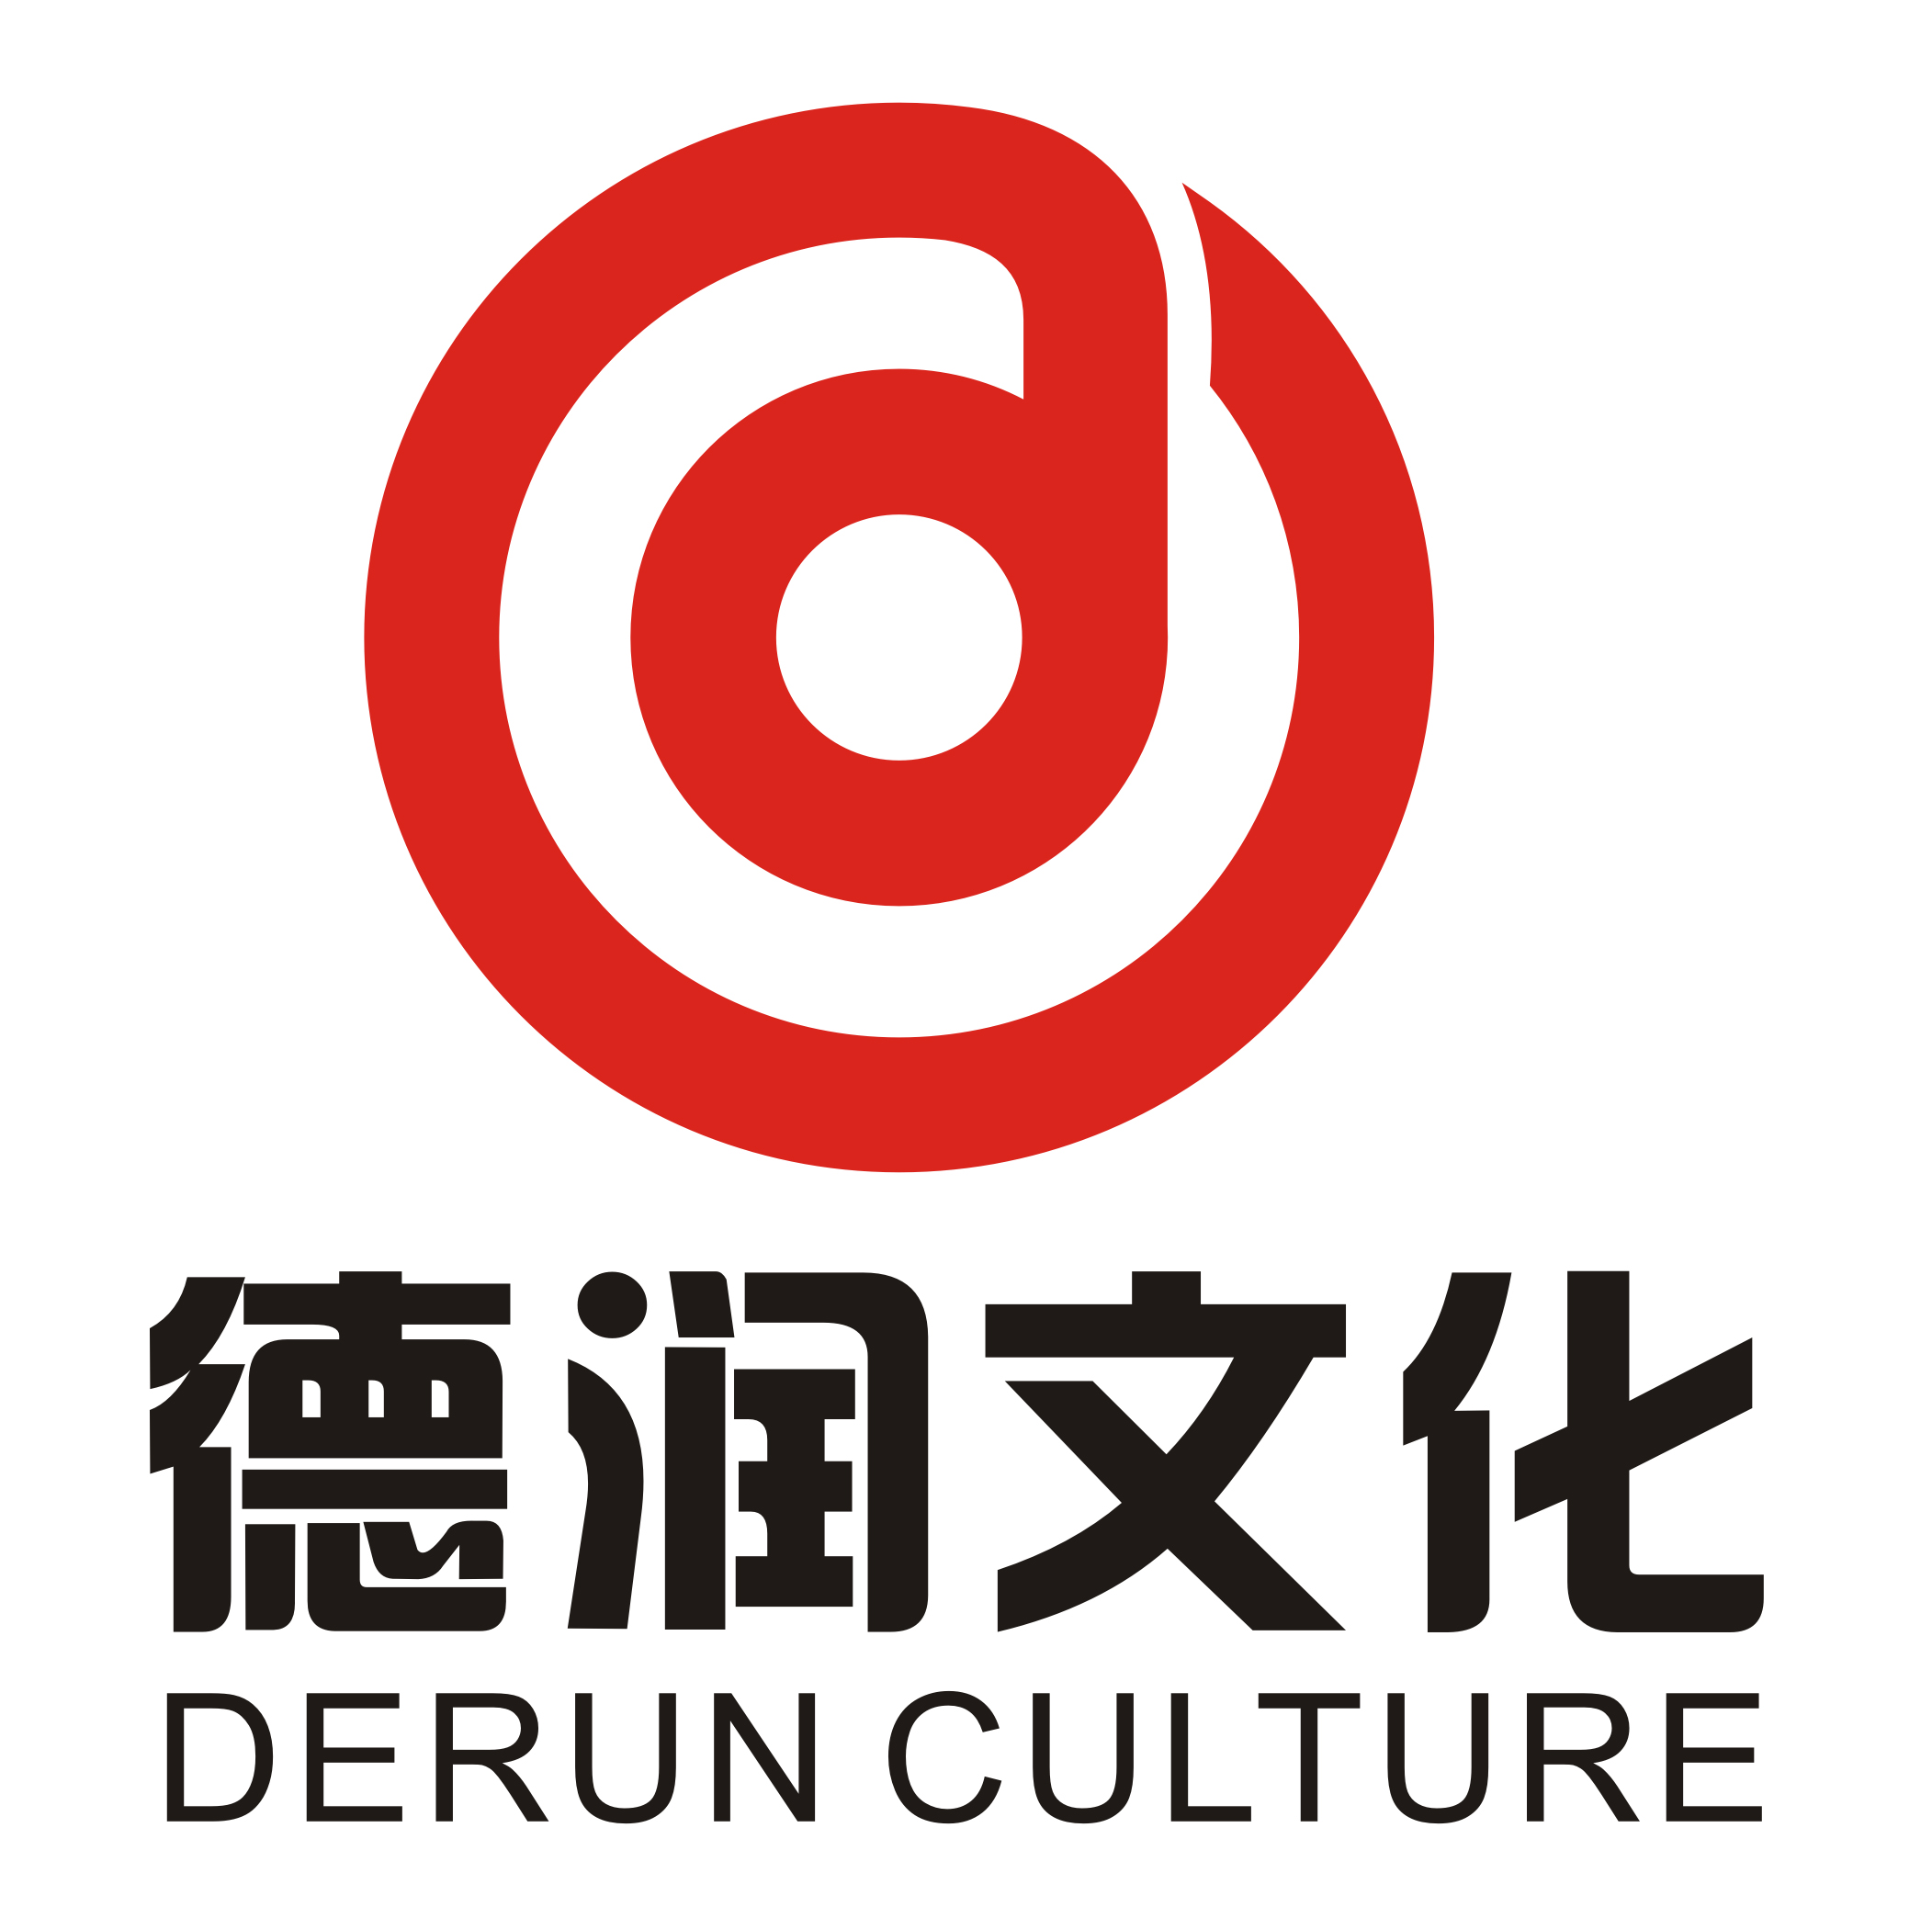 画廊logo设计图片